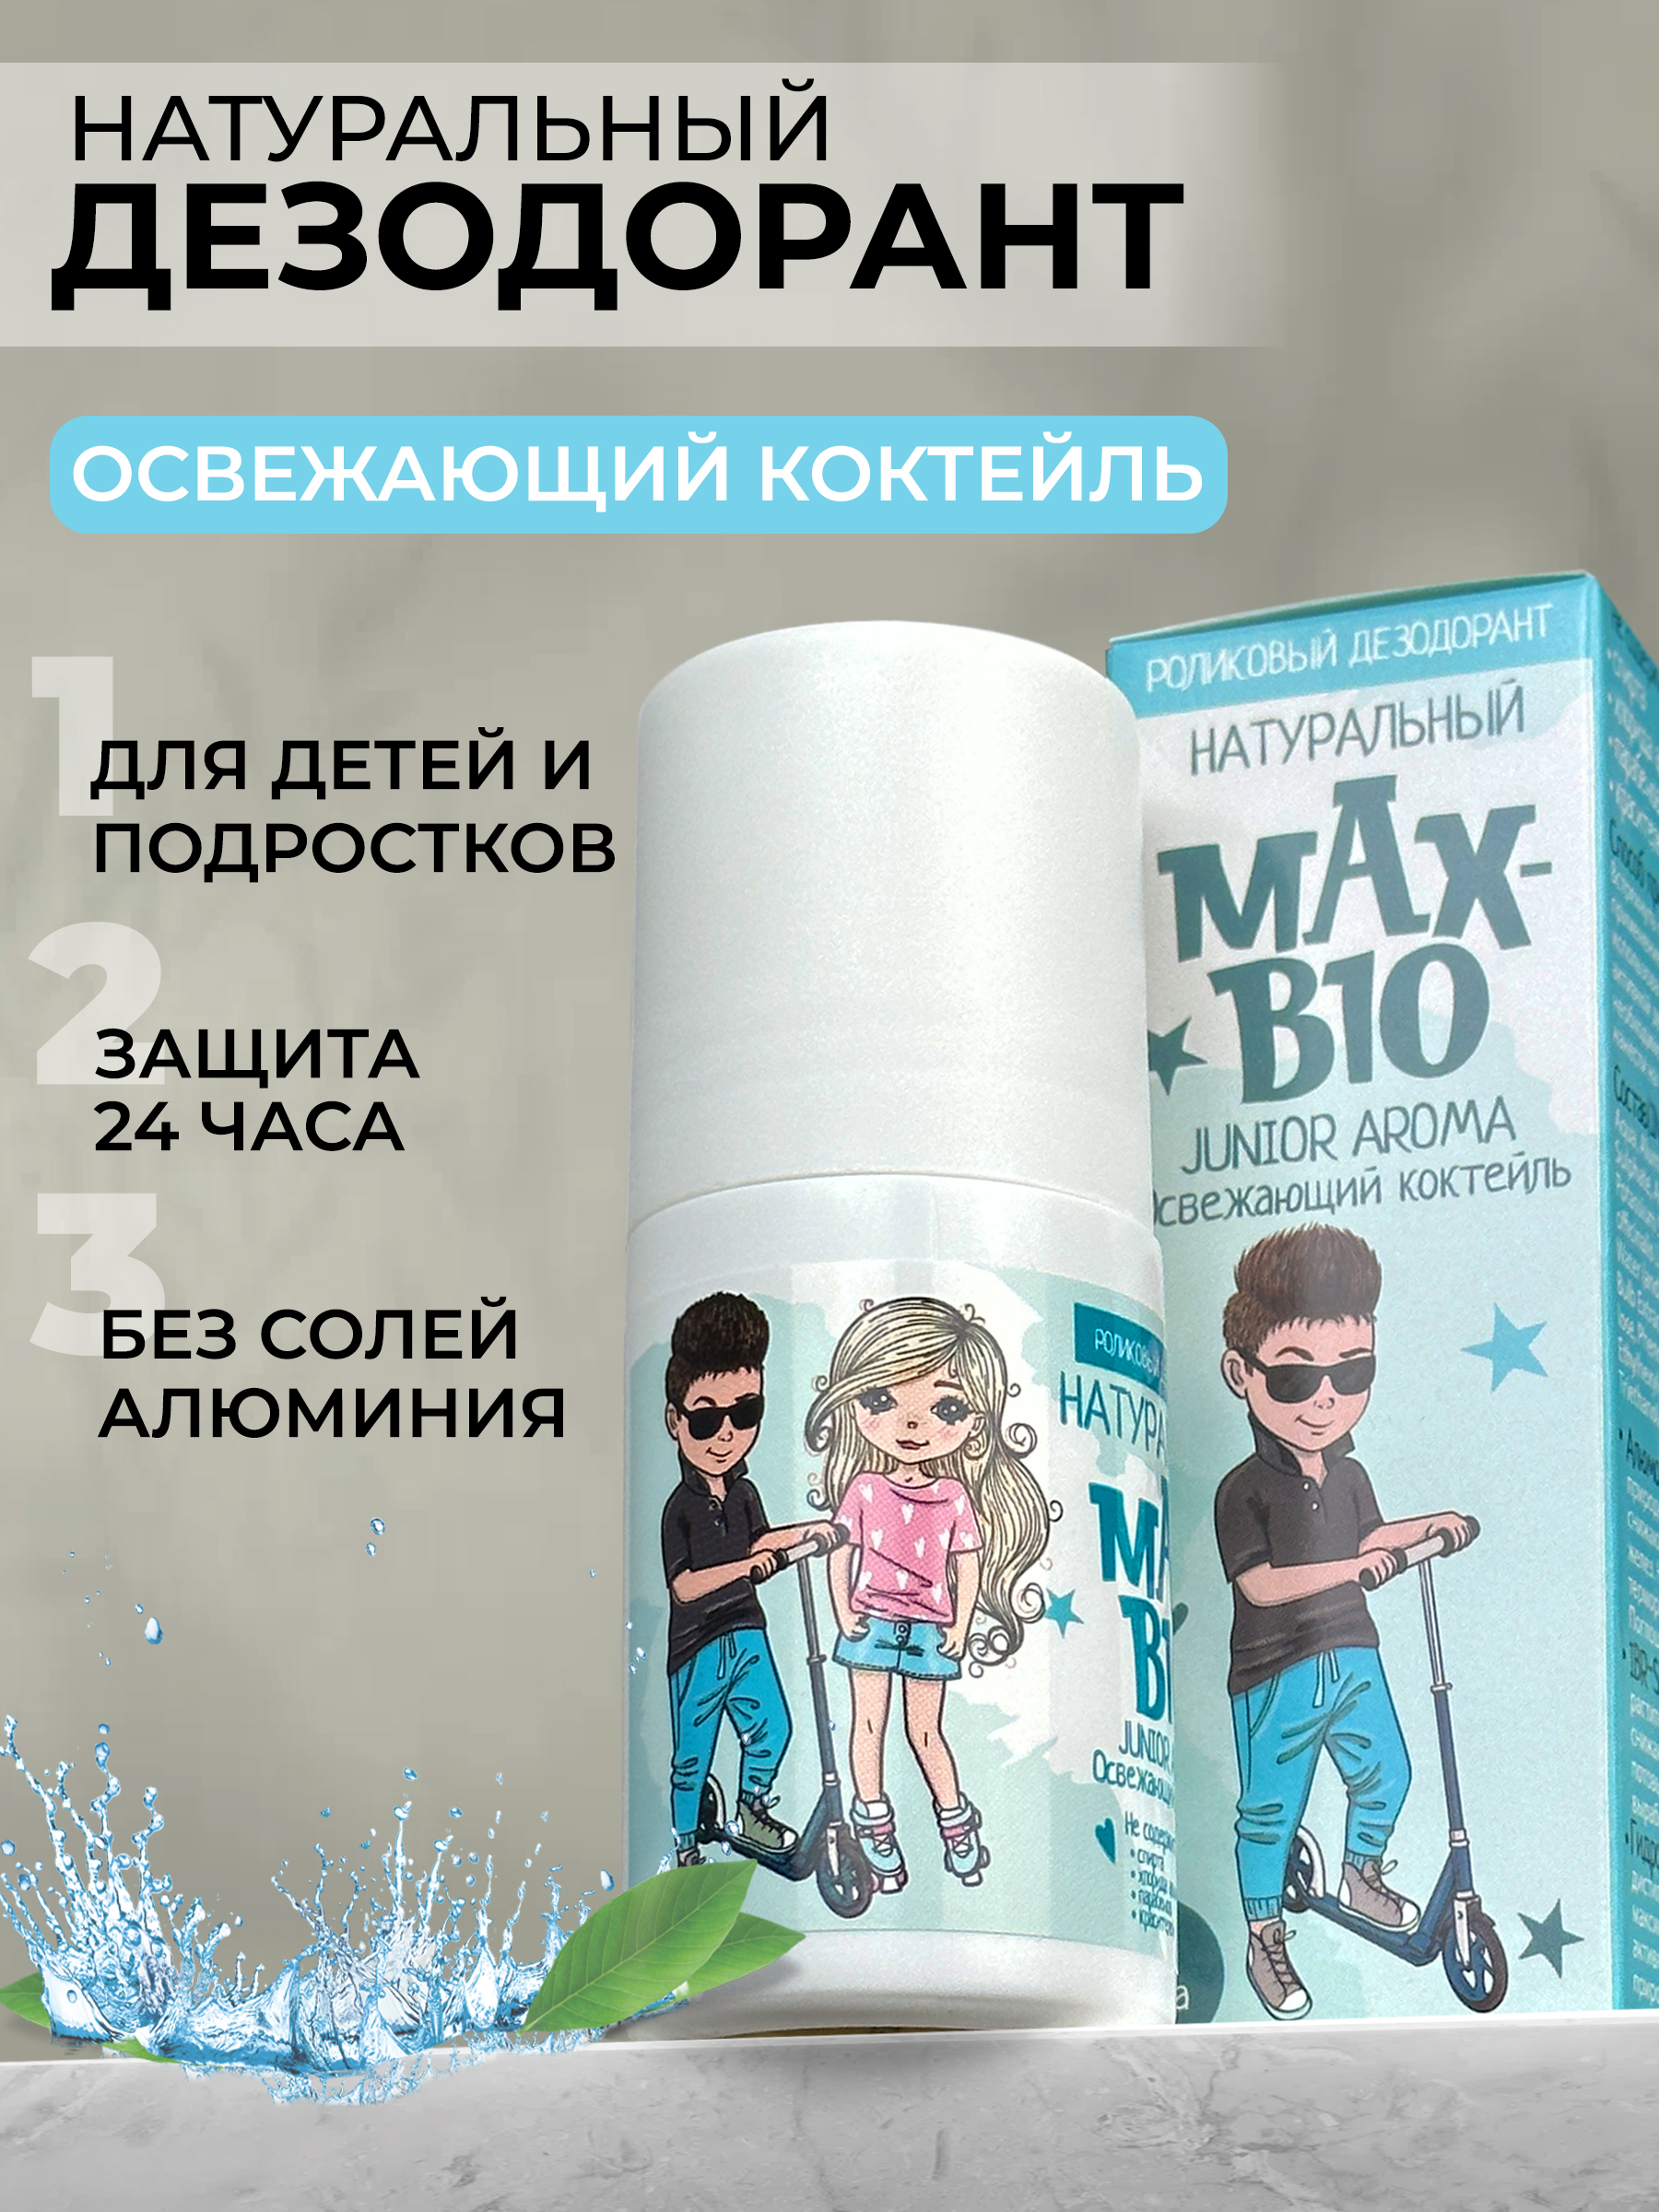 Дезодорант Max-Bio Junior Aroma Освежающий коктейль, 50 мл дезодорант rexona crystal clear aqua без белых следов для женщин спрей 150 мл